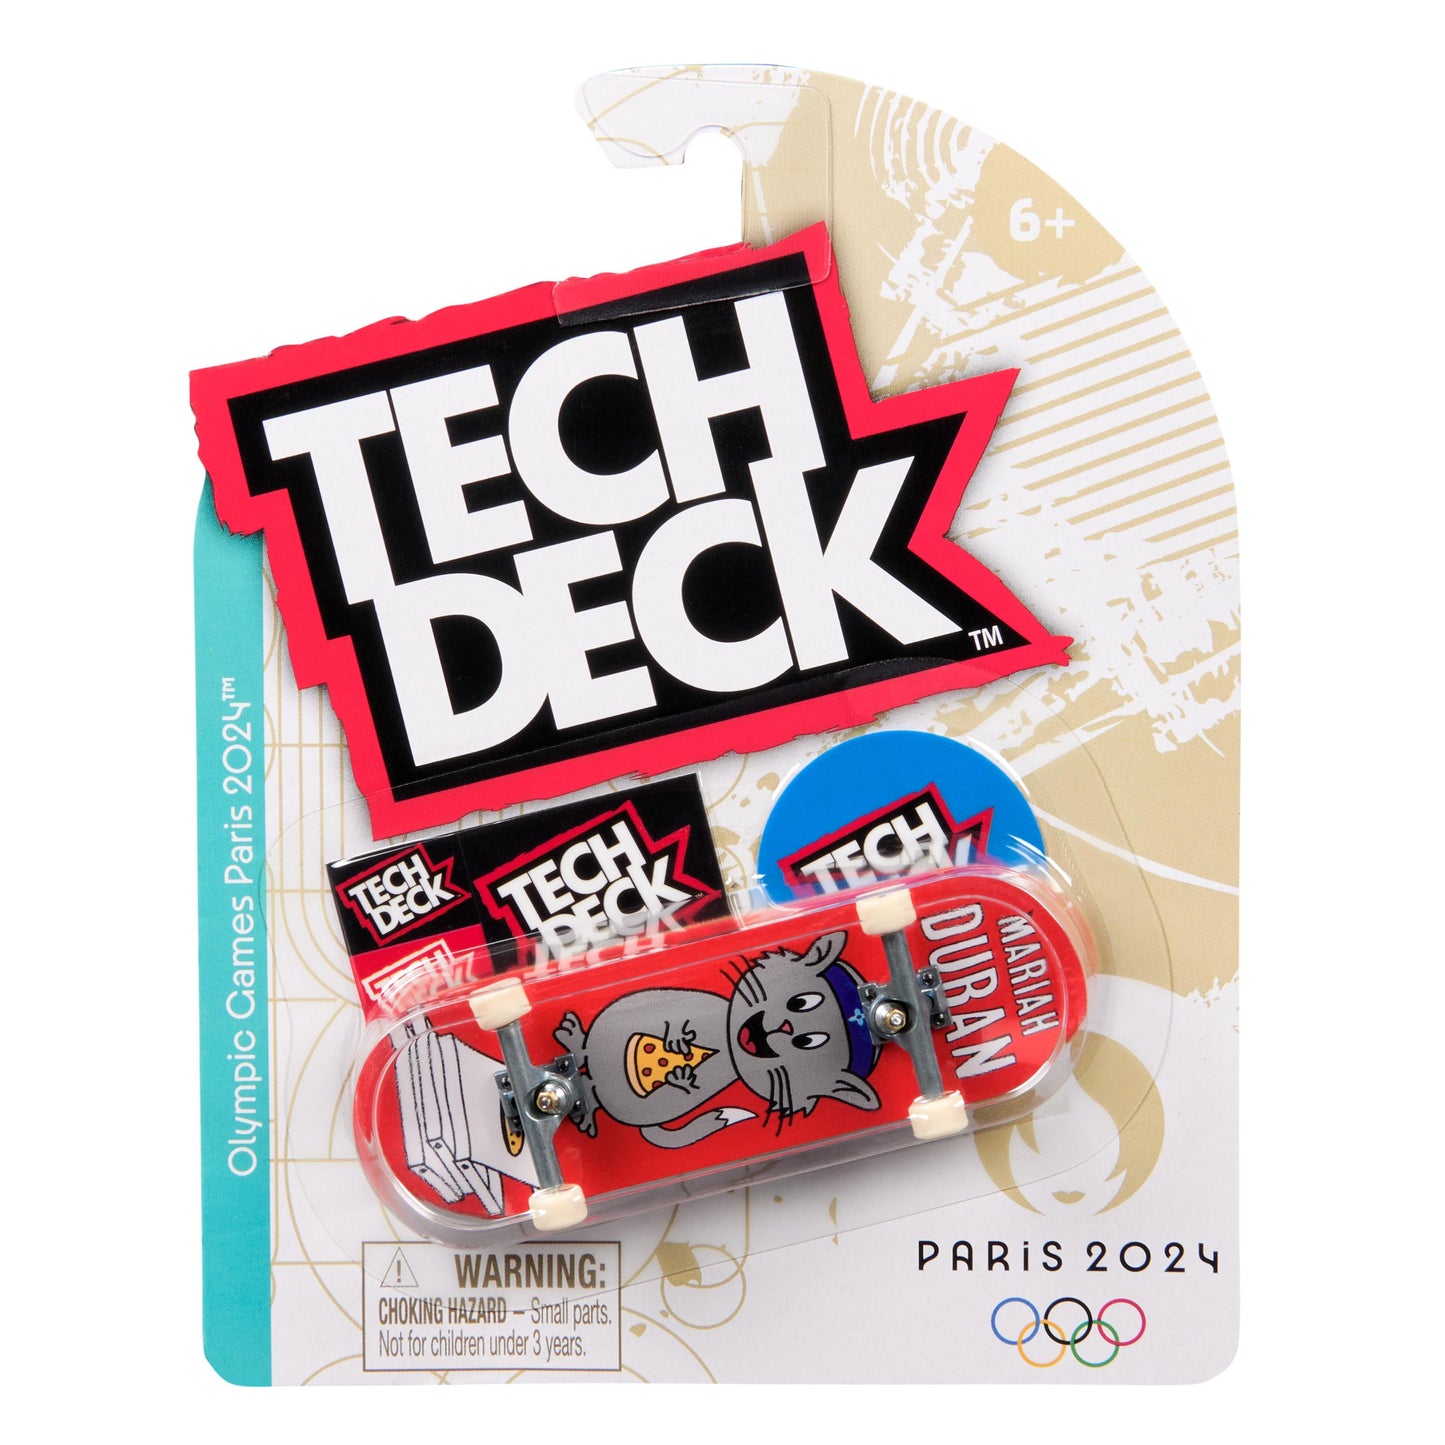 Tech Deck 96mm Fingerboard Olympic M50